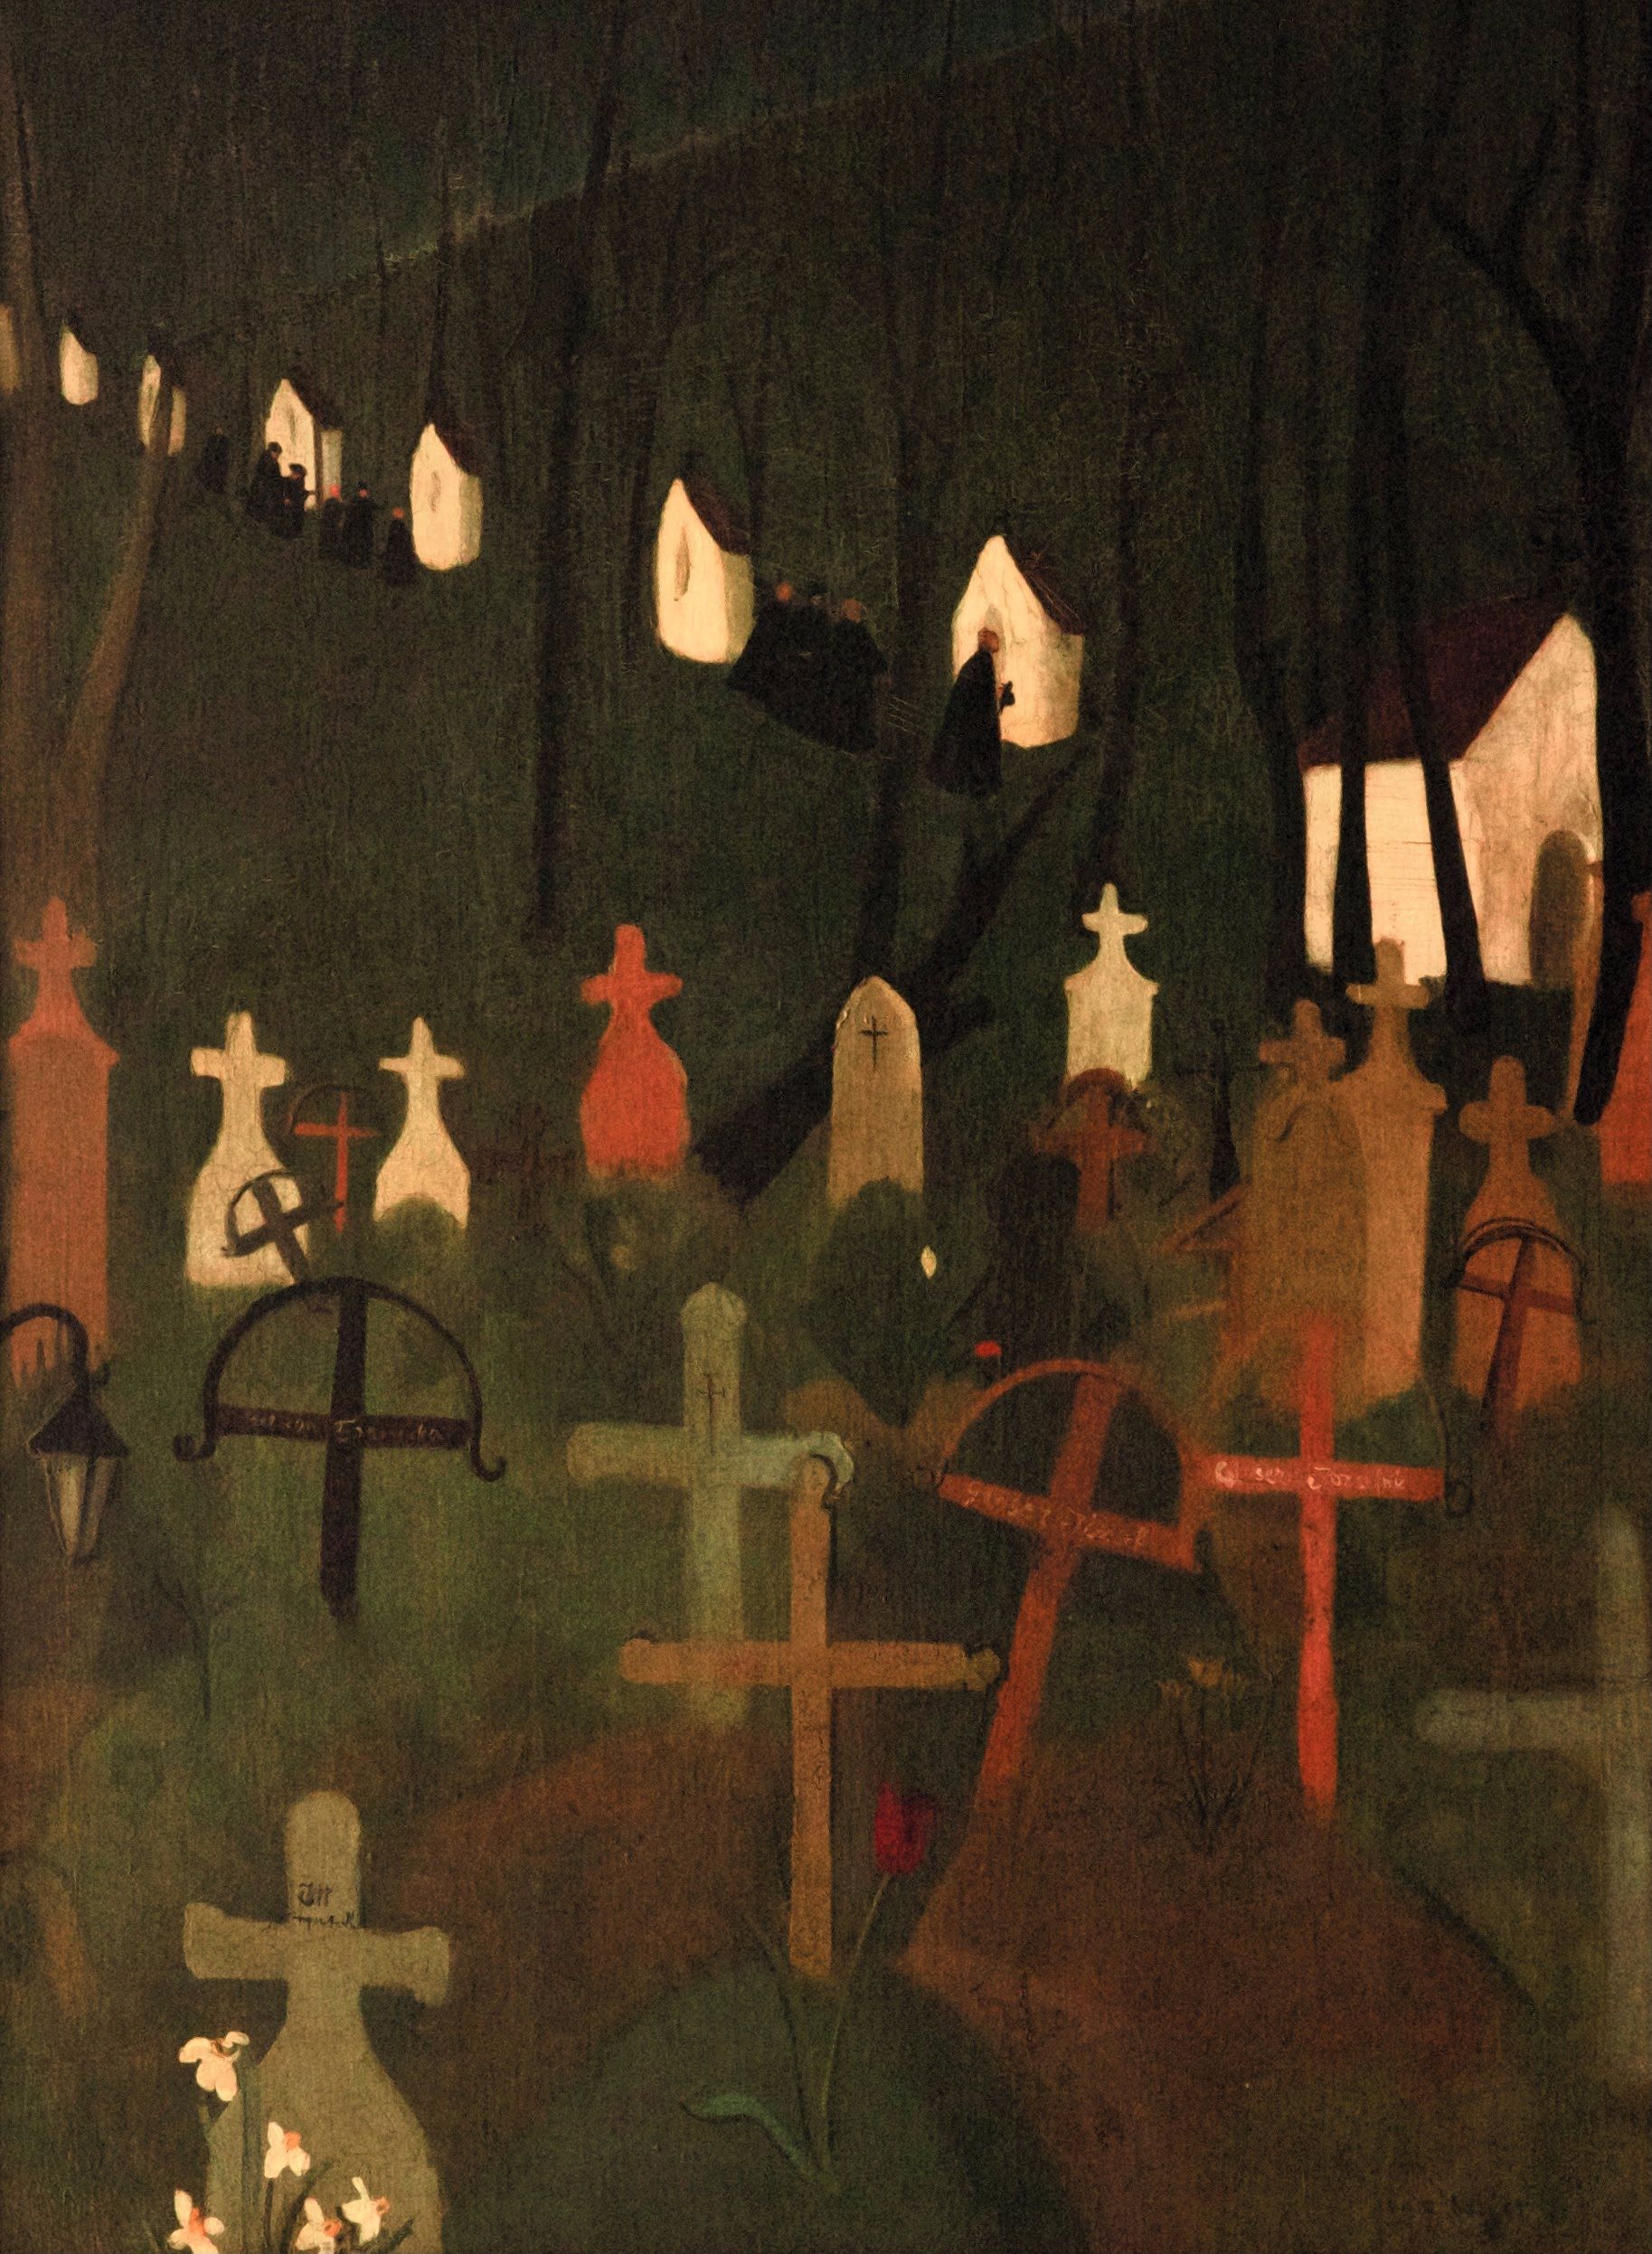 歡樂的墓園 by Amrita Sher-Gil - 1939年 - 75 x 100.5 公分 